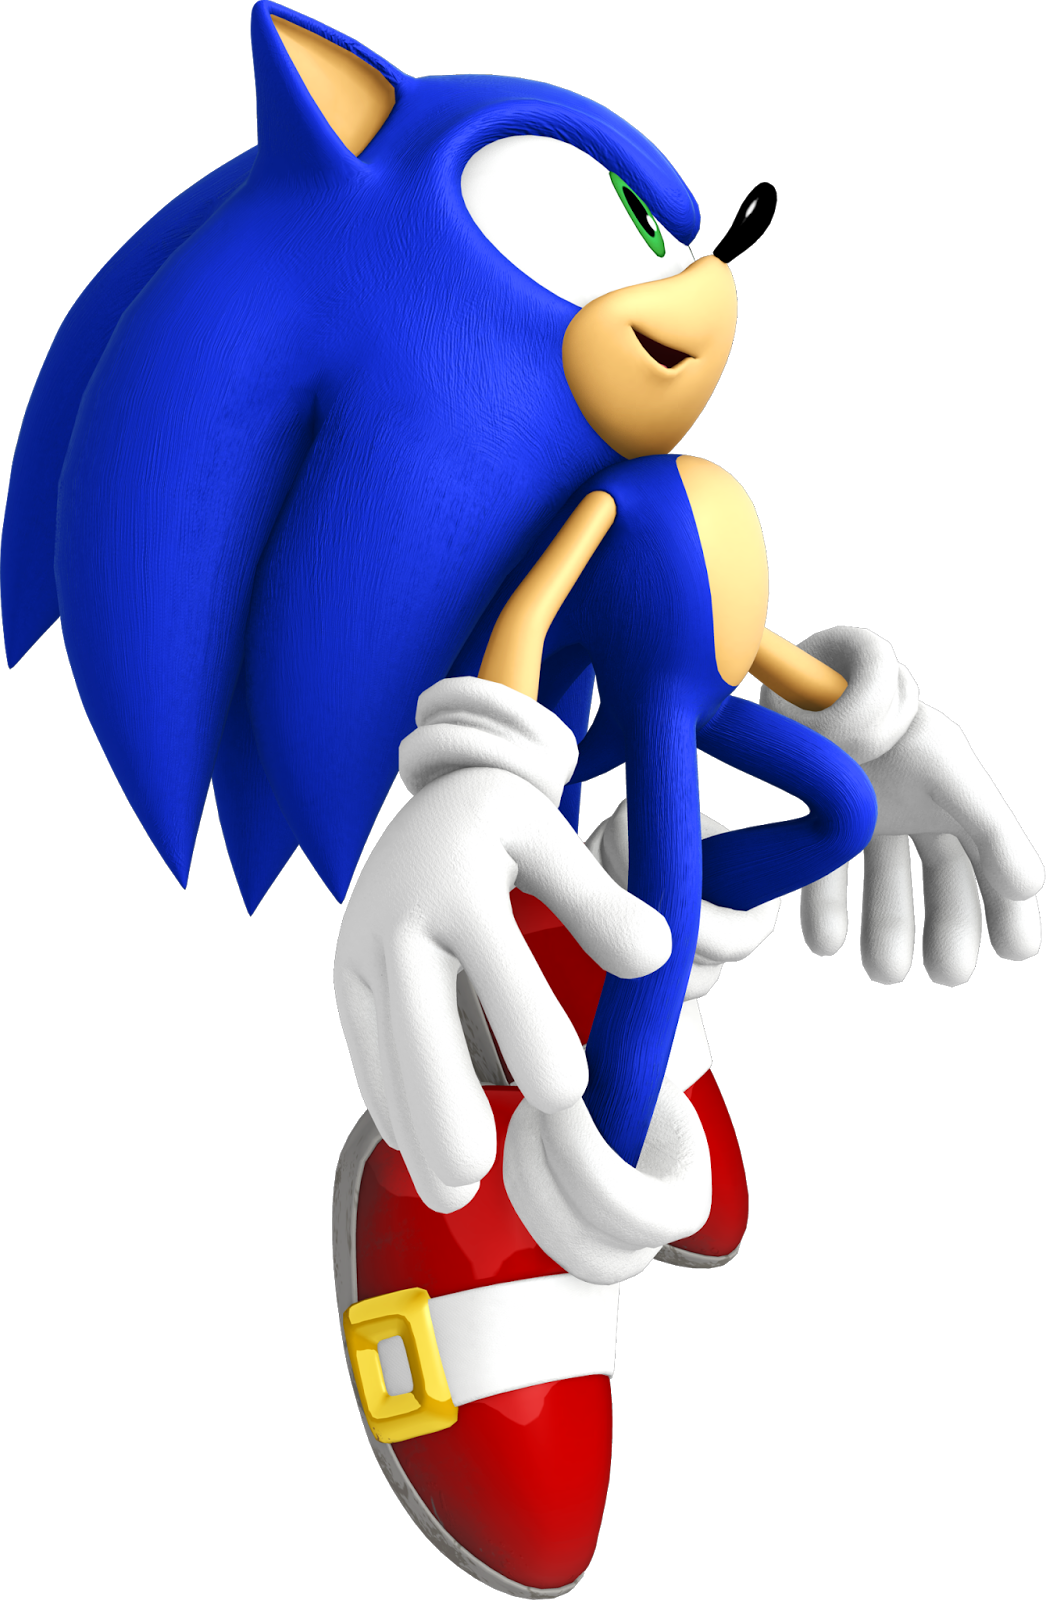 Sonic the Hedgehog on X: Alô, Brasil-SIL-SIL-SIL!!! (com muito eco) O  perfil oficial do ouriço mais rápido dos games chegou para trazer  informações e novidades sobre o universo de Sonic the Hedgehog!